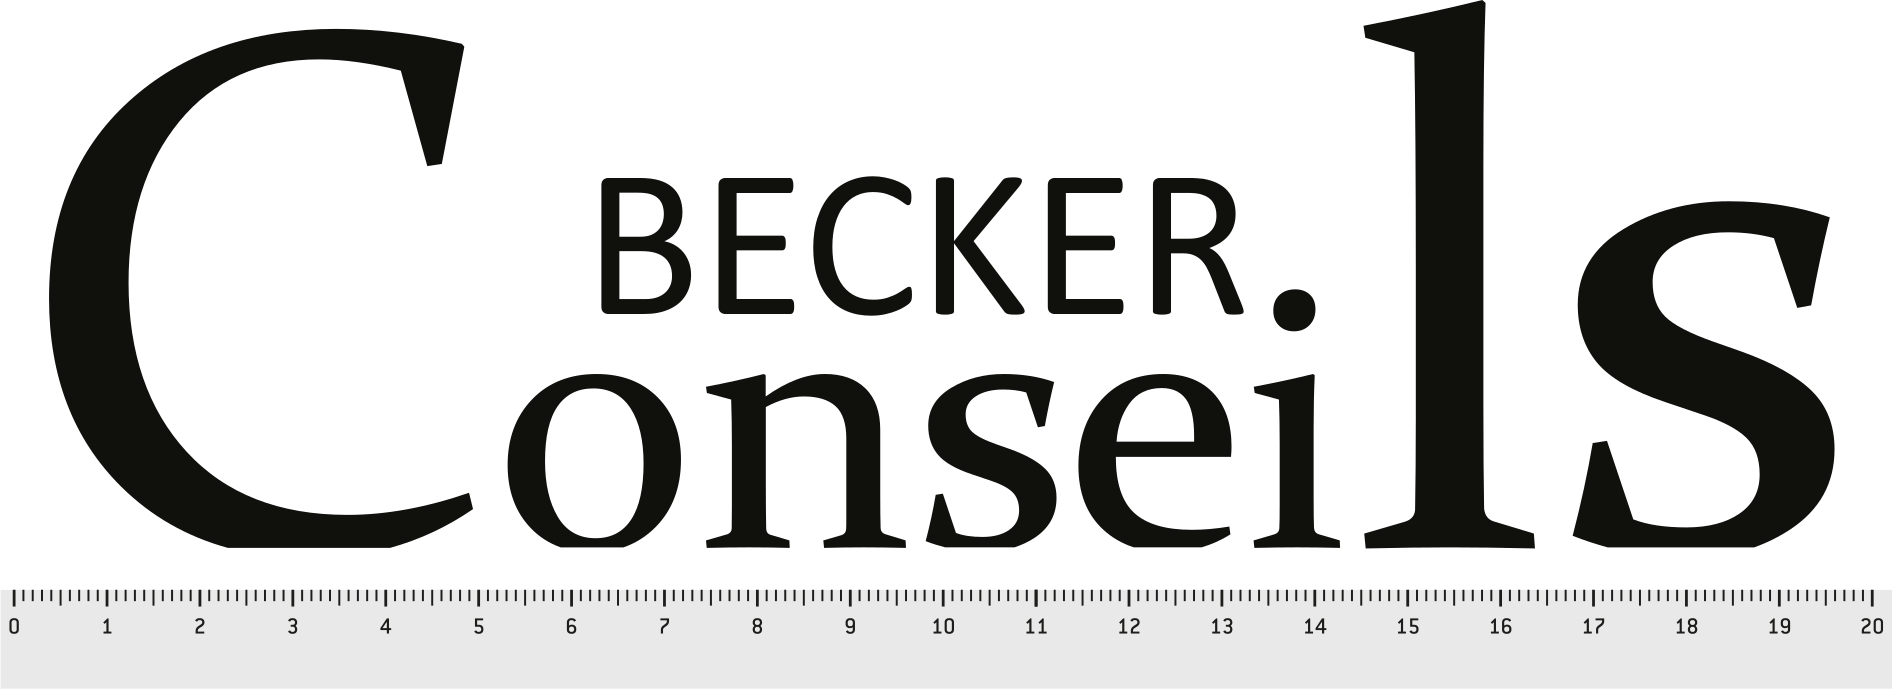 Becker Conseils logo